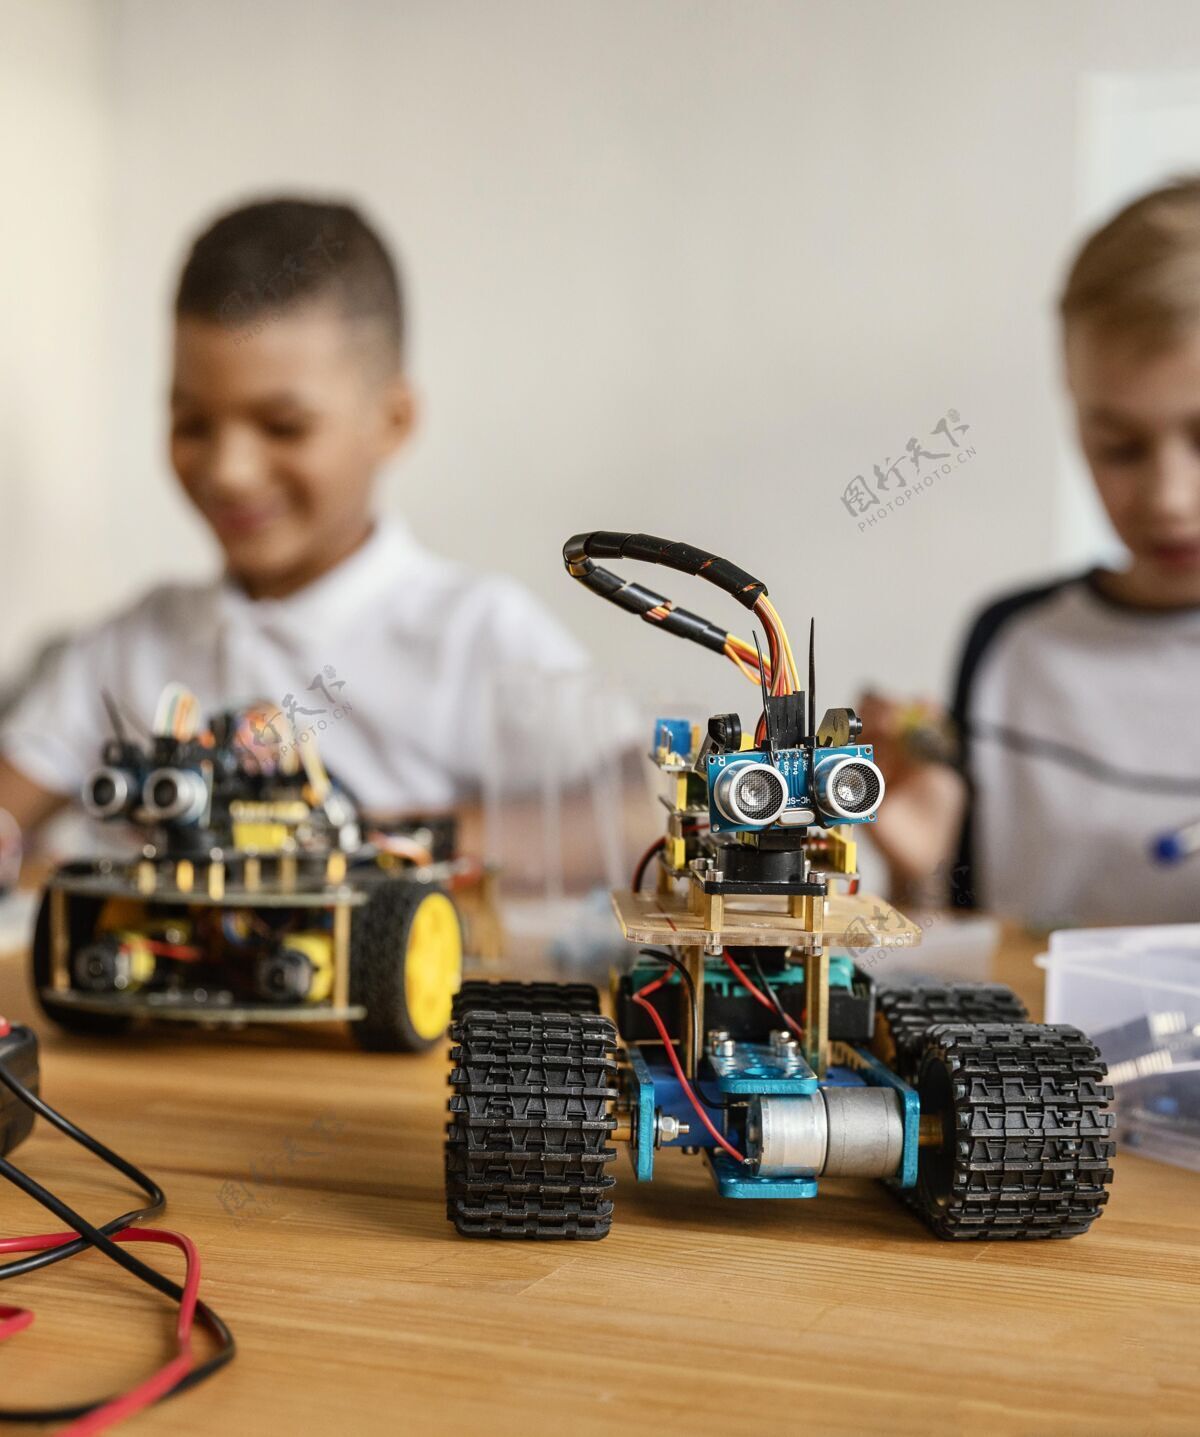 孩子儿童制造机器人机器人工艺组件